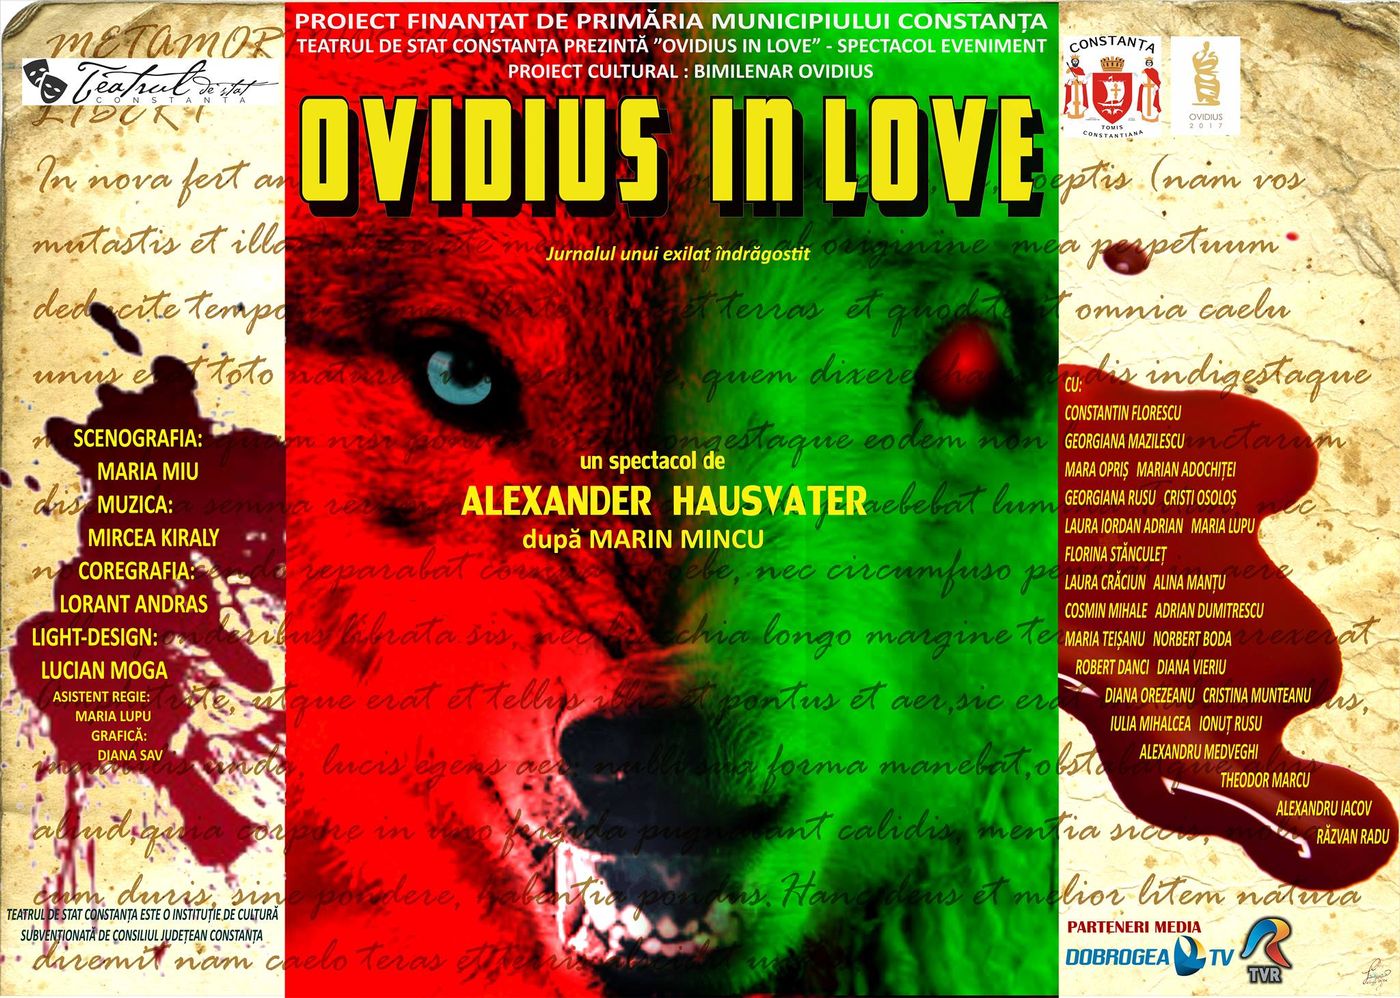 Ovidius in love, cea mai spectaculoasă premieră a Teatrului de Stat Constanța. Prima reprezentație are loc azi. Intrarea este gratuită